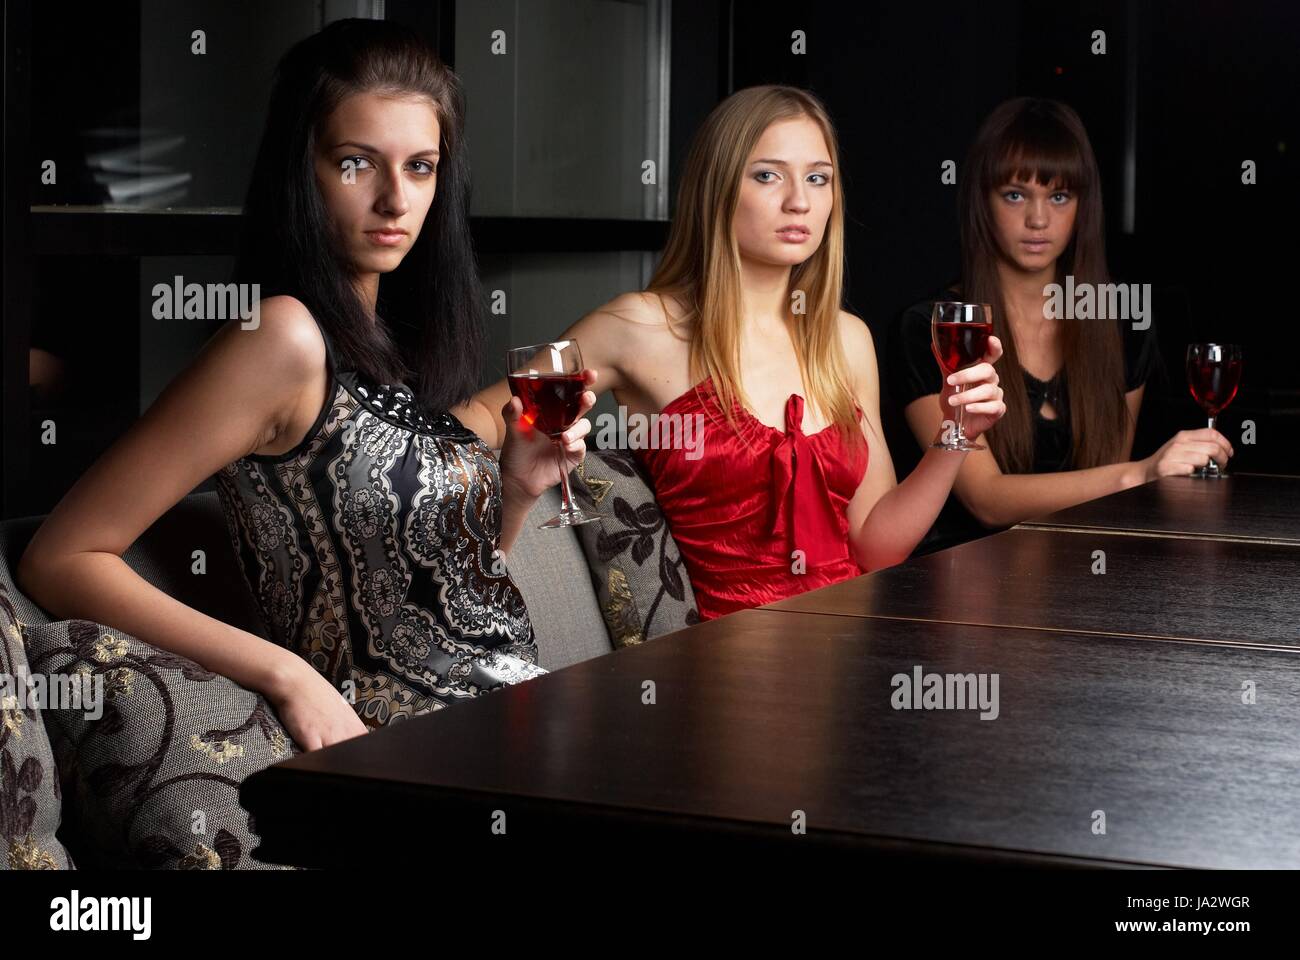 Камеди парень и три девушки после клуба. Подруги в баре. Три женщины в кафе. Девушка в ресторане. Три девушки в ресторане.